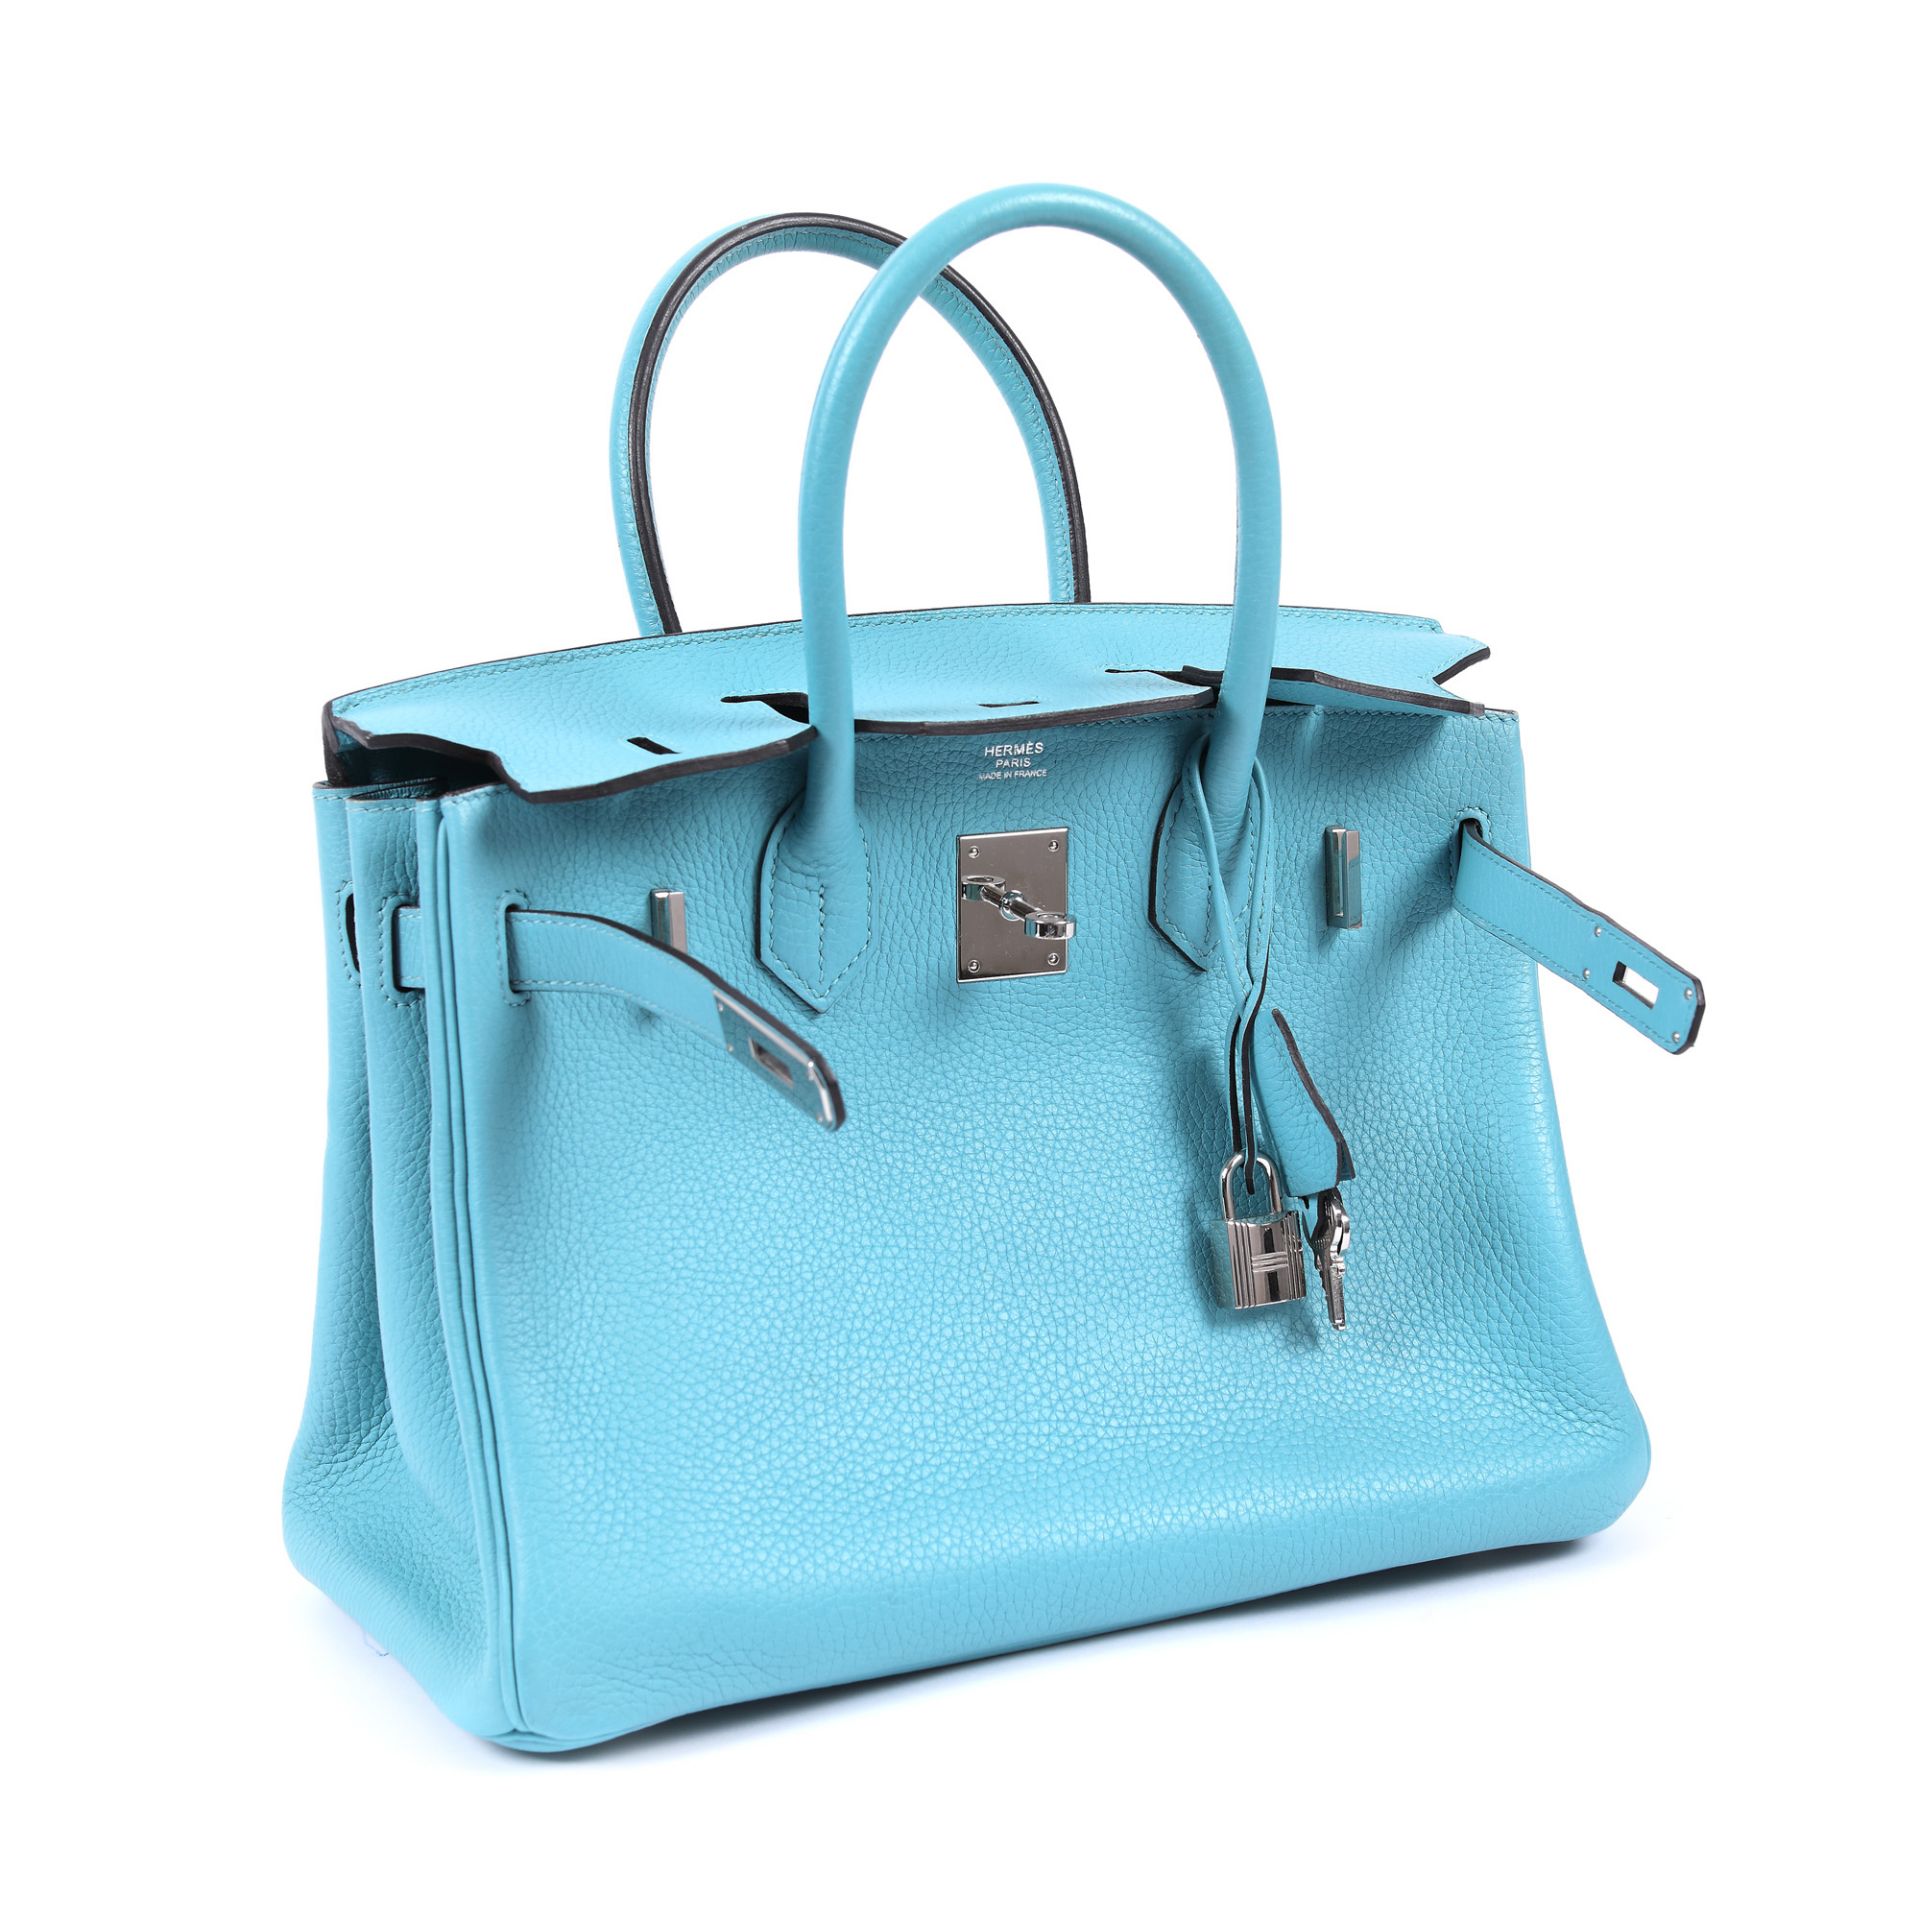 Hermès handbag, Birkin 30, Togo leather, Bleu du Nord colour - Image 3 of 9